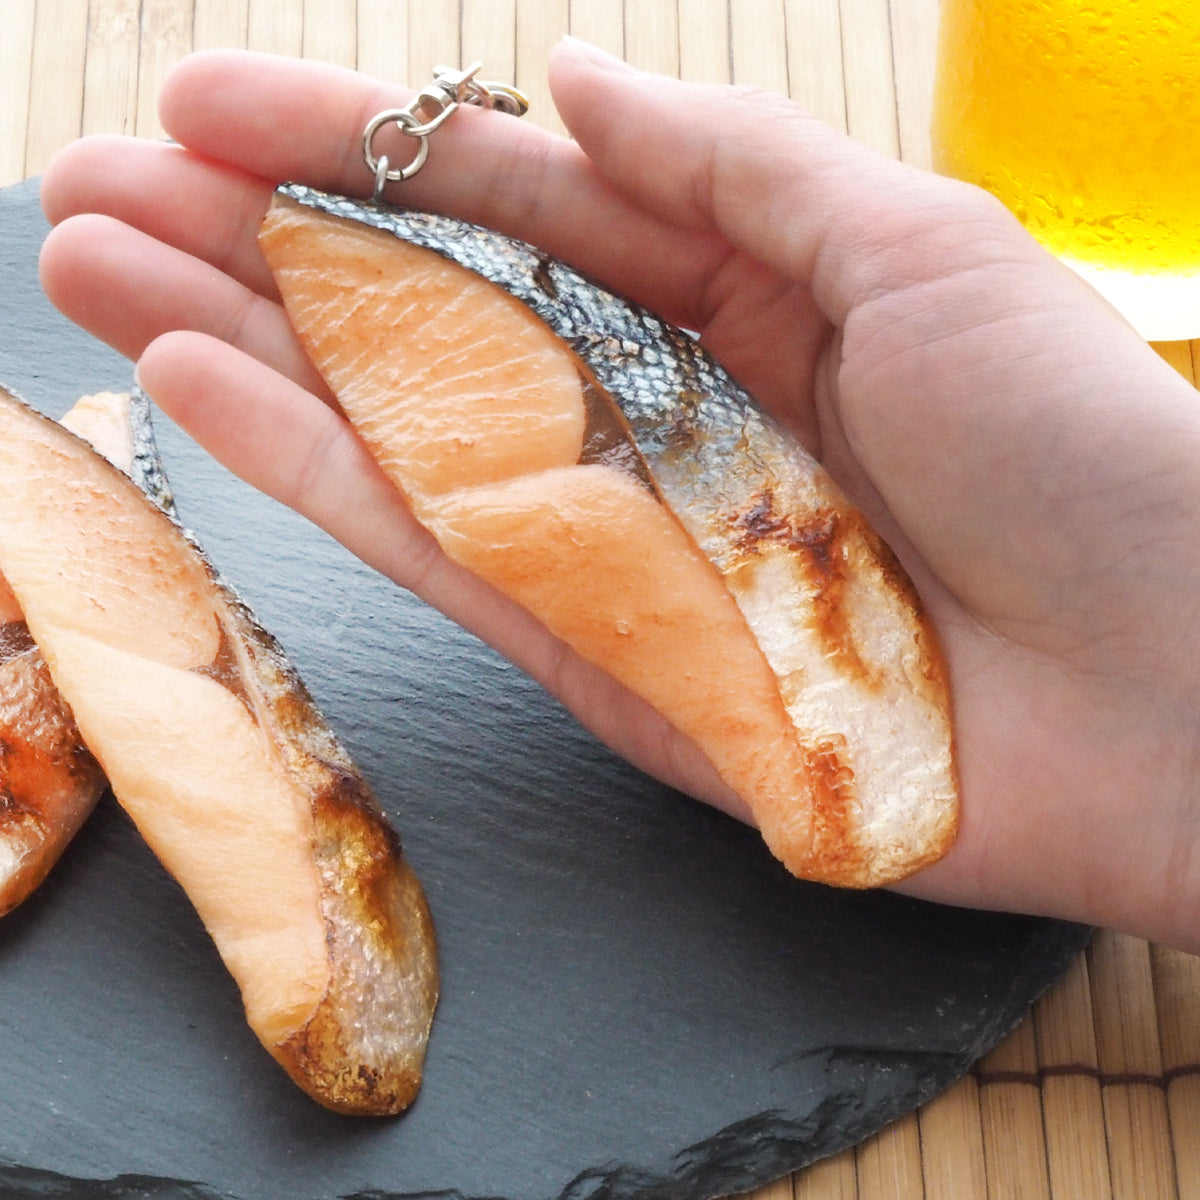 これは元祖食品サンプル屋「キーリング 焼魚鮭(中)」の手にのせた商品イメージ画像です。